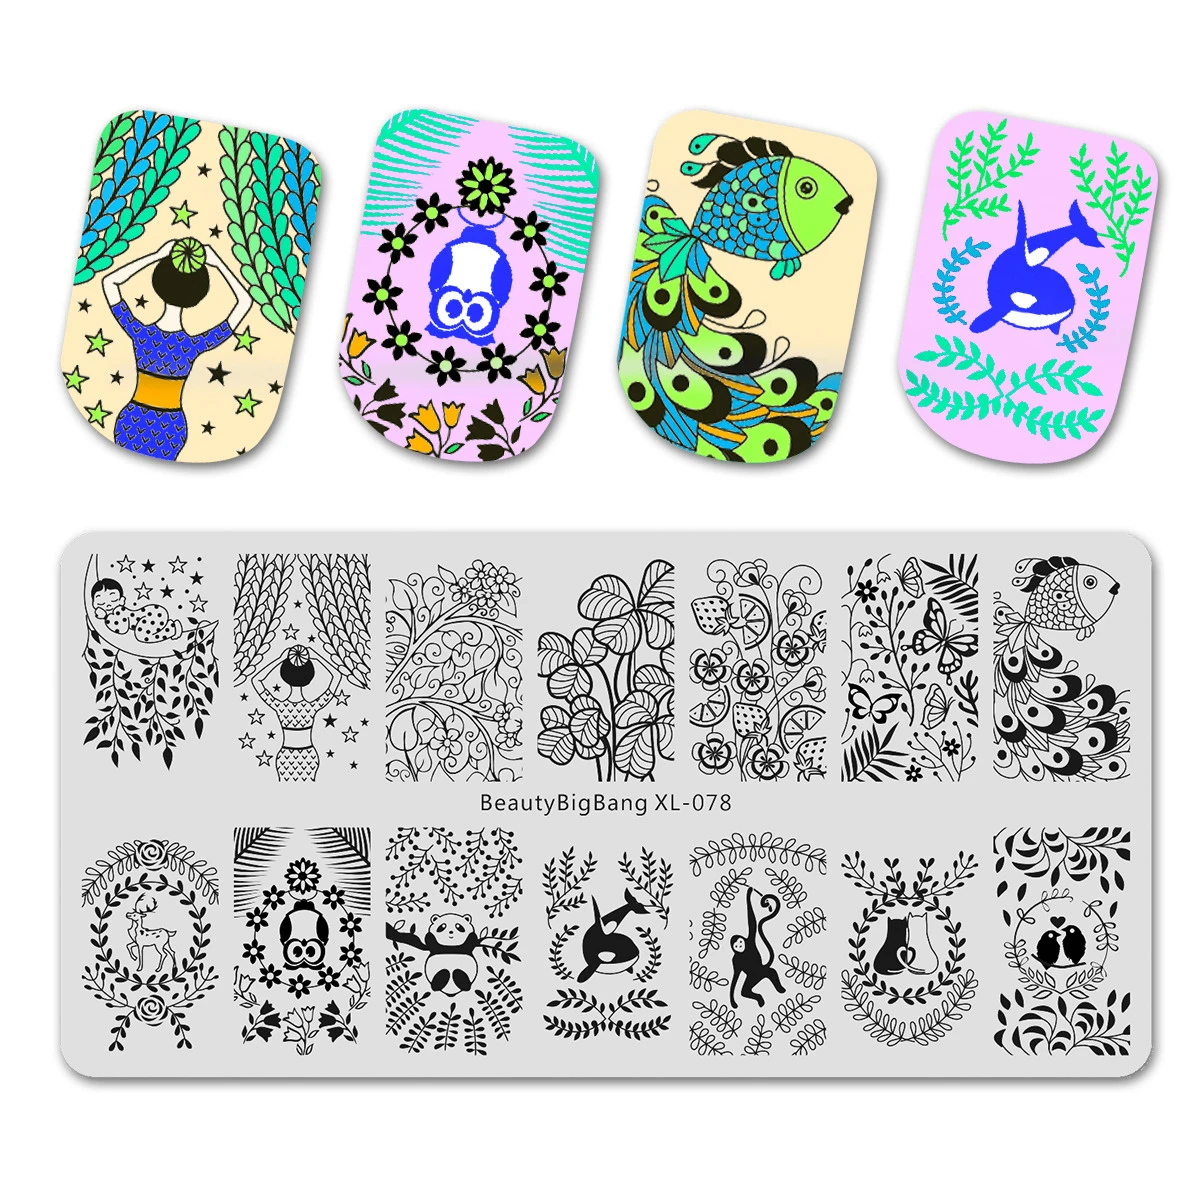 Beautybigbang ногтей штамповки пластины дизайн ногтей цветок стрекоза лотоса изображения ногтей шикарный штамповка шаблон печати пластины плесень XL-088 - Цвет: 78